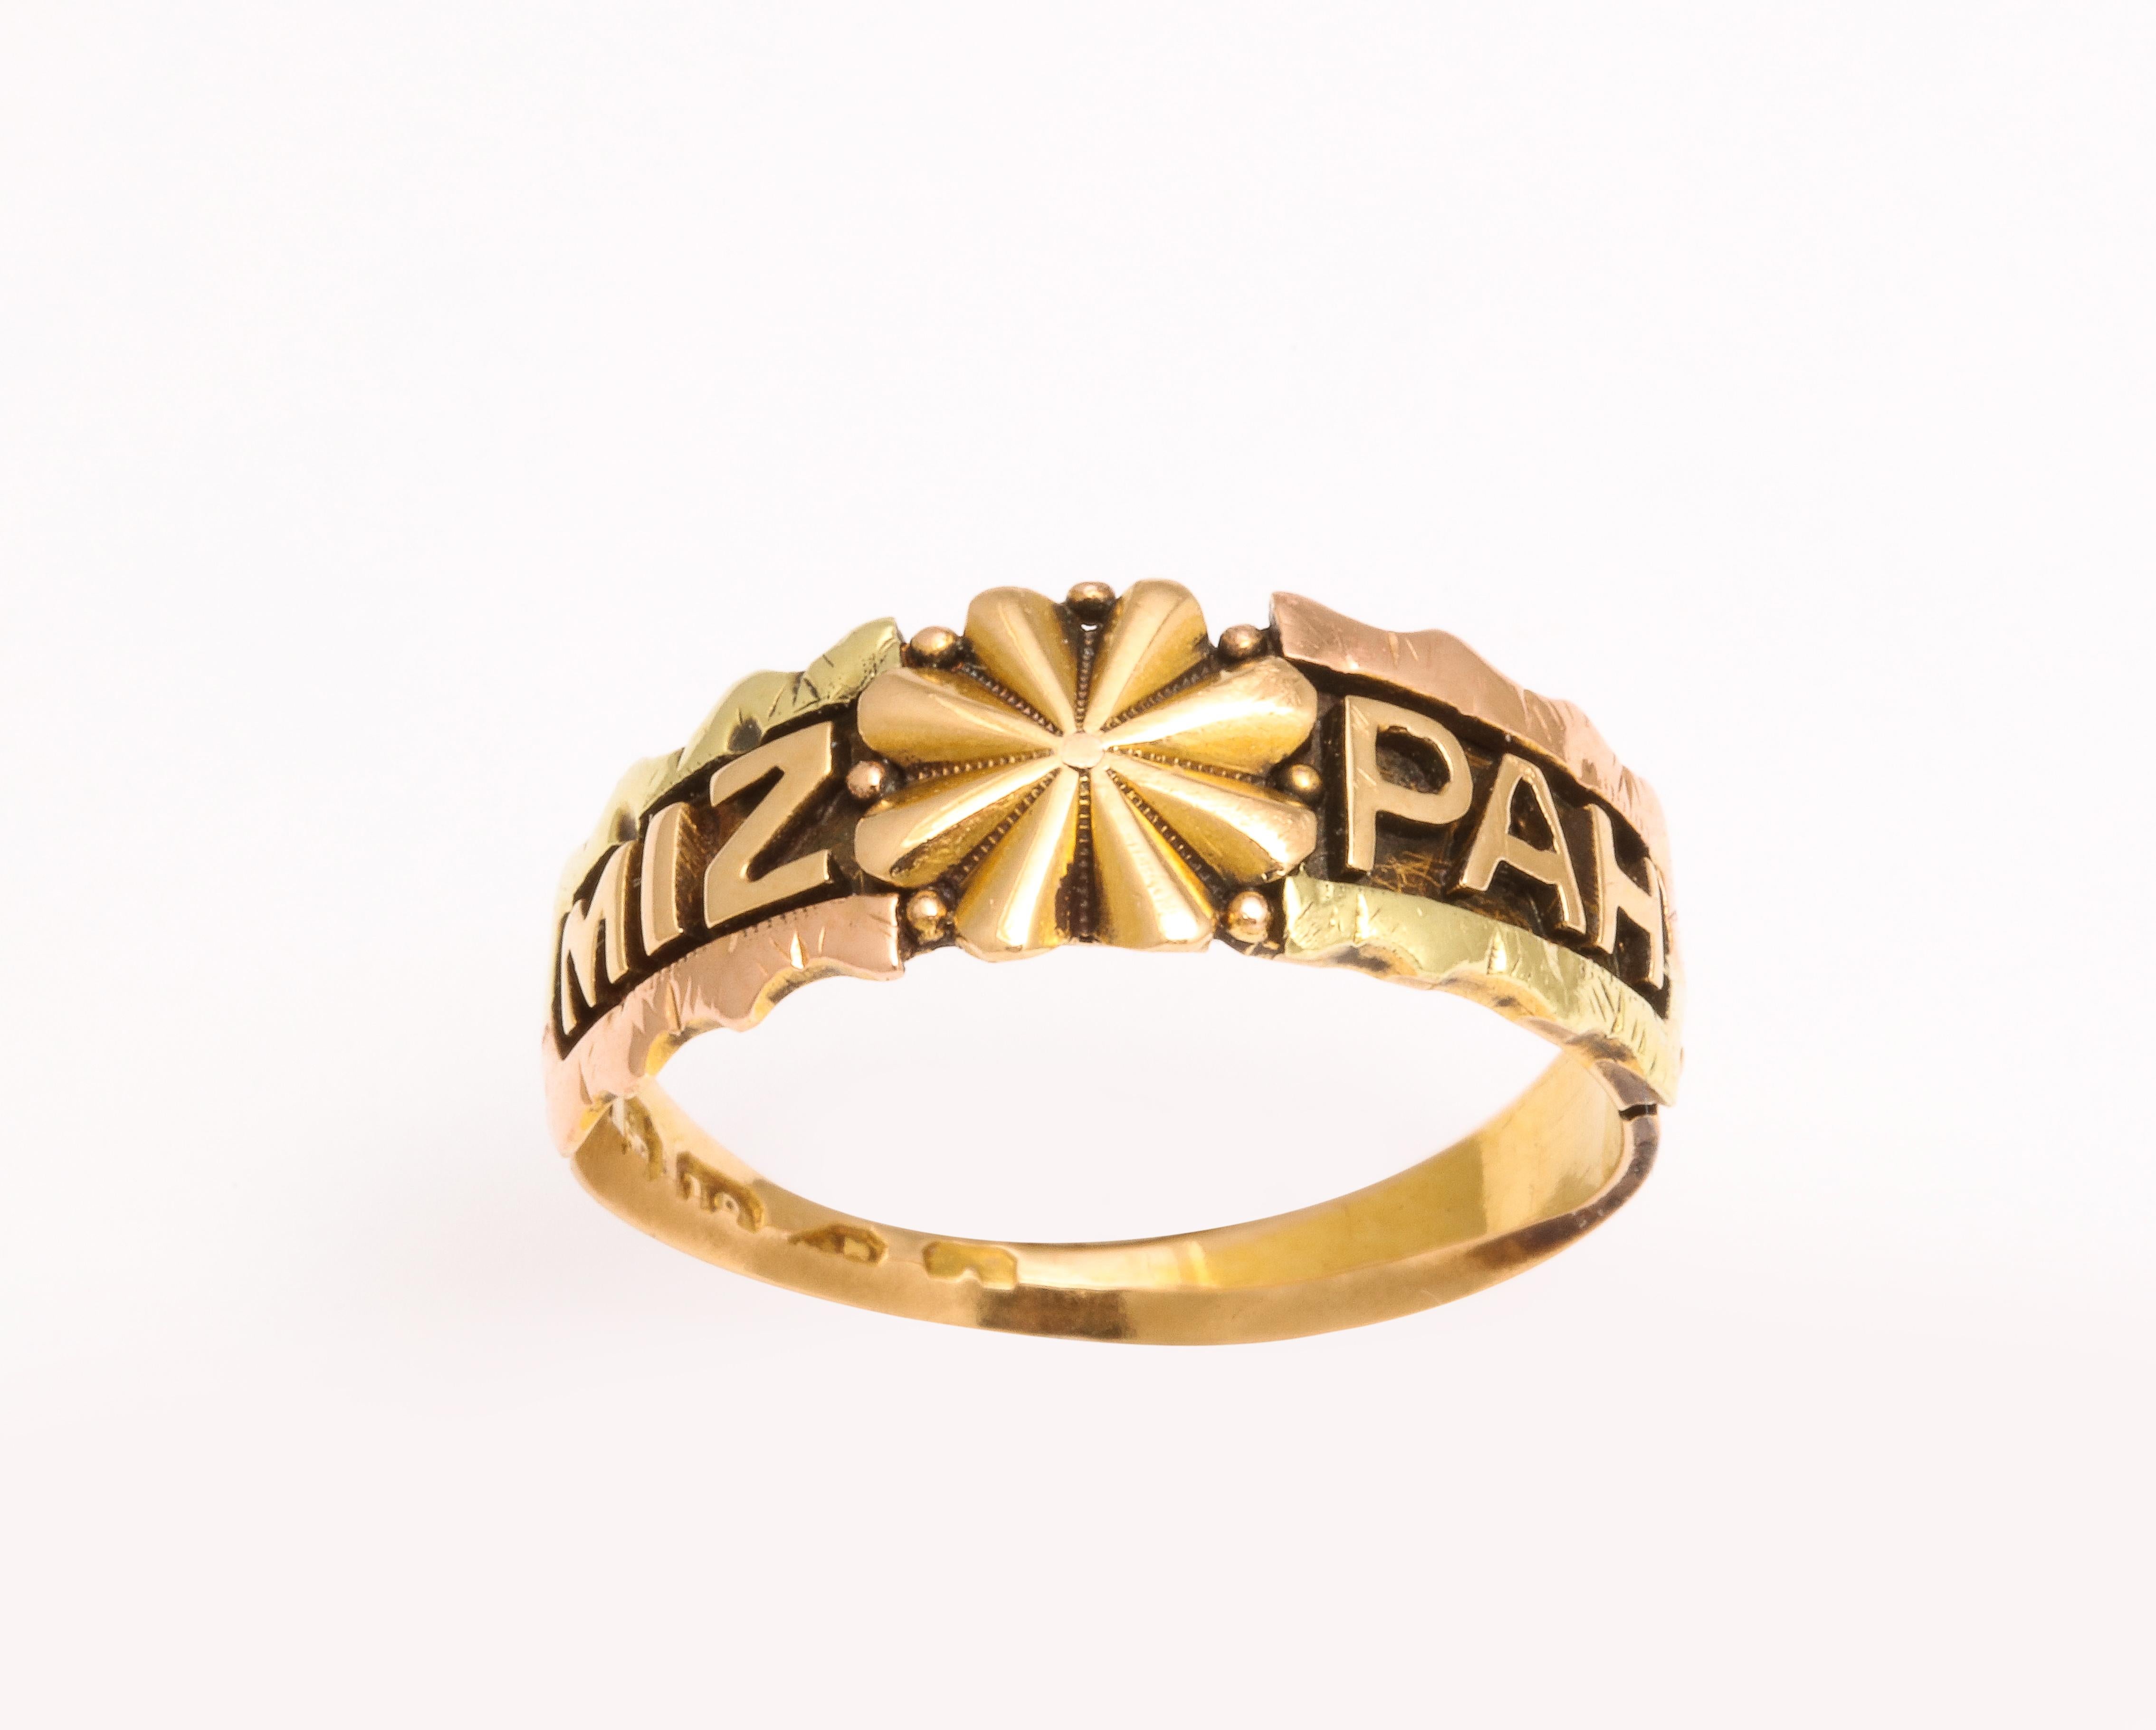 En contraste frappant, cette bague Mizpah a été créée vers 1870 en or 18 carats. En contraste frappant avec l'absence d'usure, le mot Mispah est inscrit en lettres d'or sur un fond d'or plus foncé.  l'arrière-plan. Les bordures sont festonnées. Une